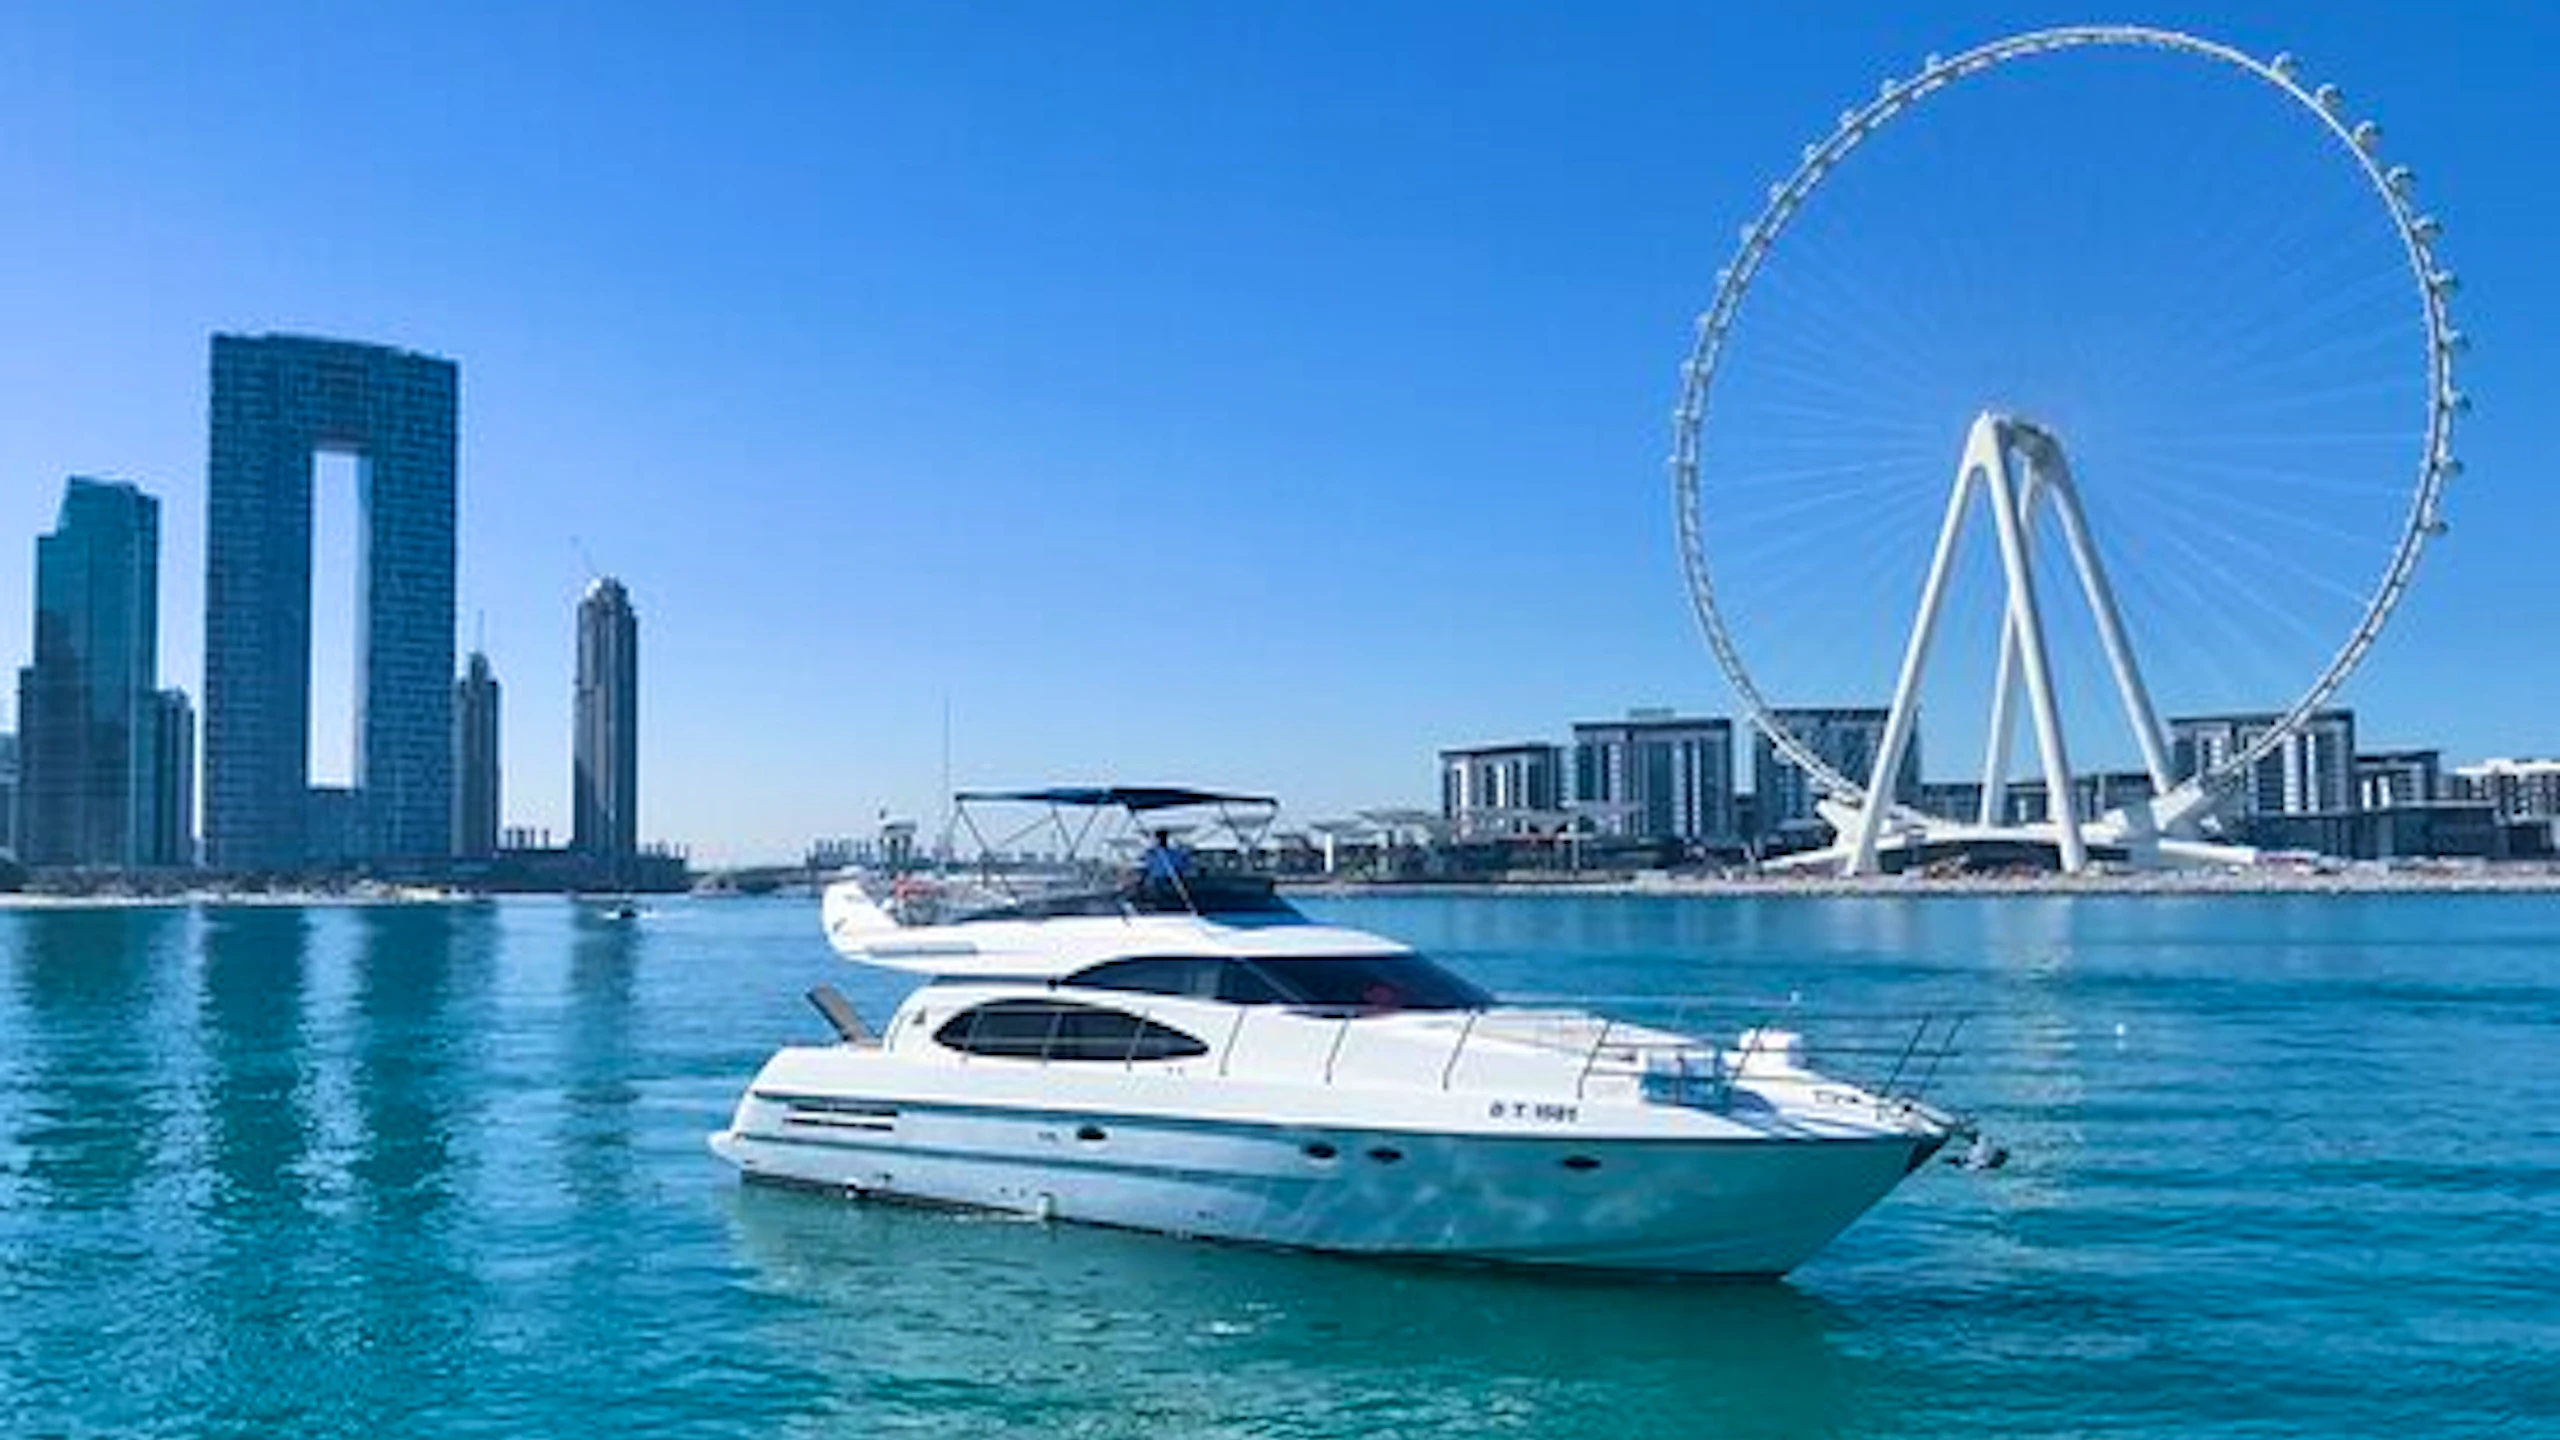 Dubai Marina Boat Ride - Thunder Boat